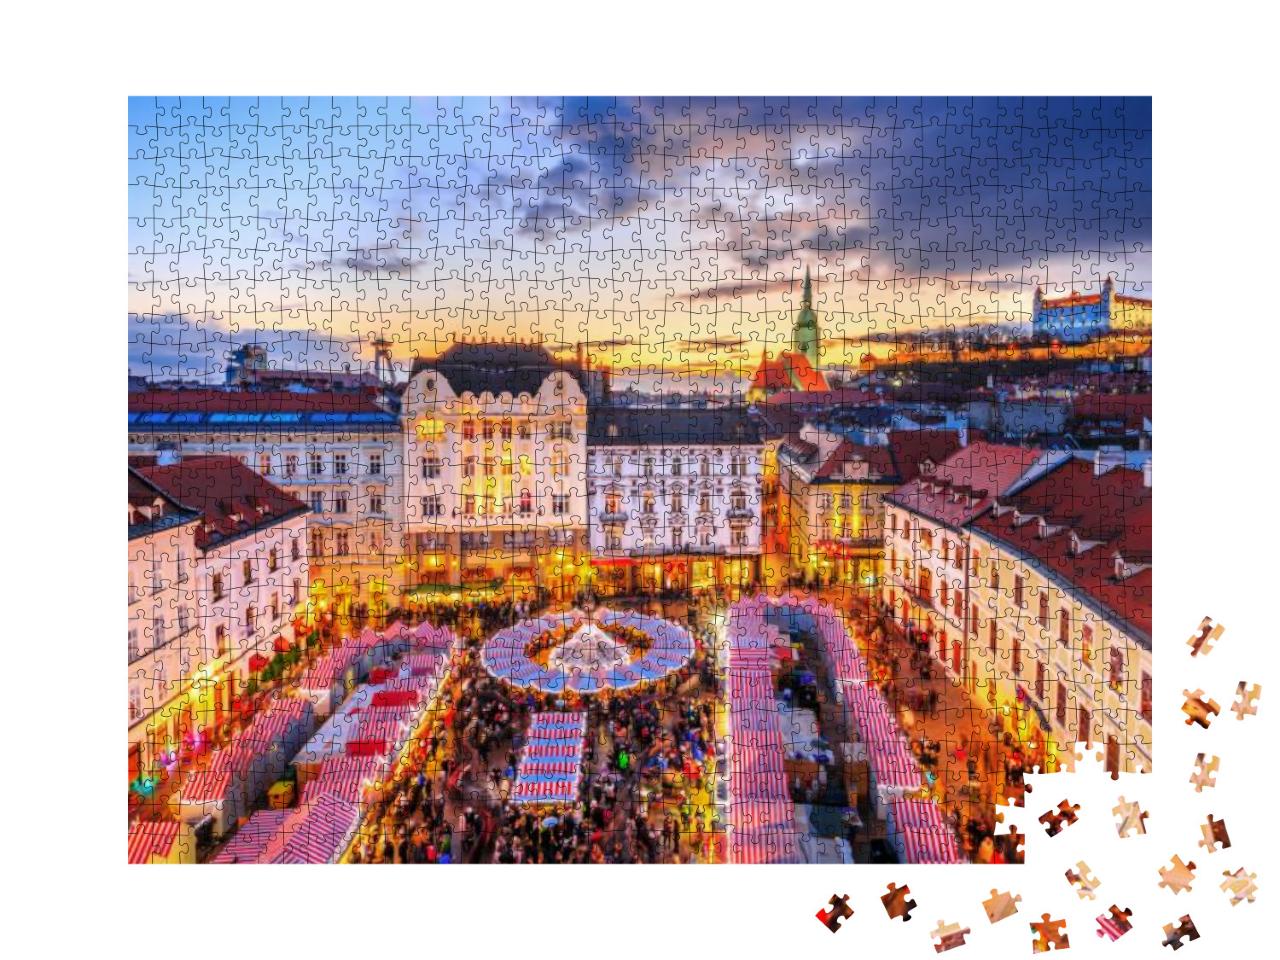 Puzzle 1000 Teile „Weihnachtsmarkt im historischen Zentrum von Bratislava, Slowakei“